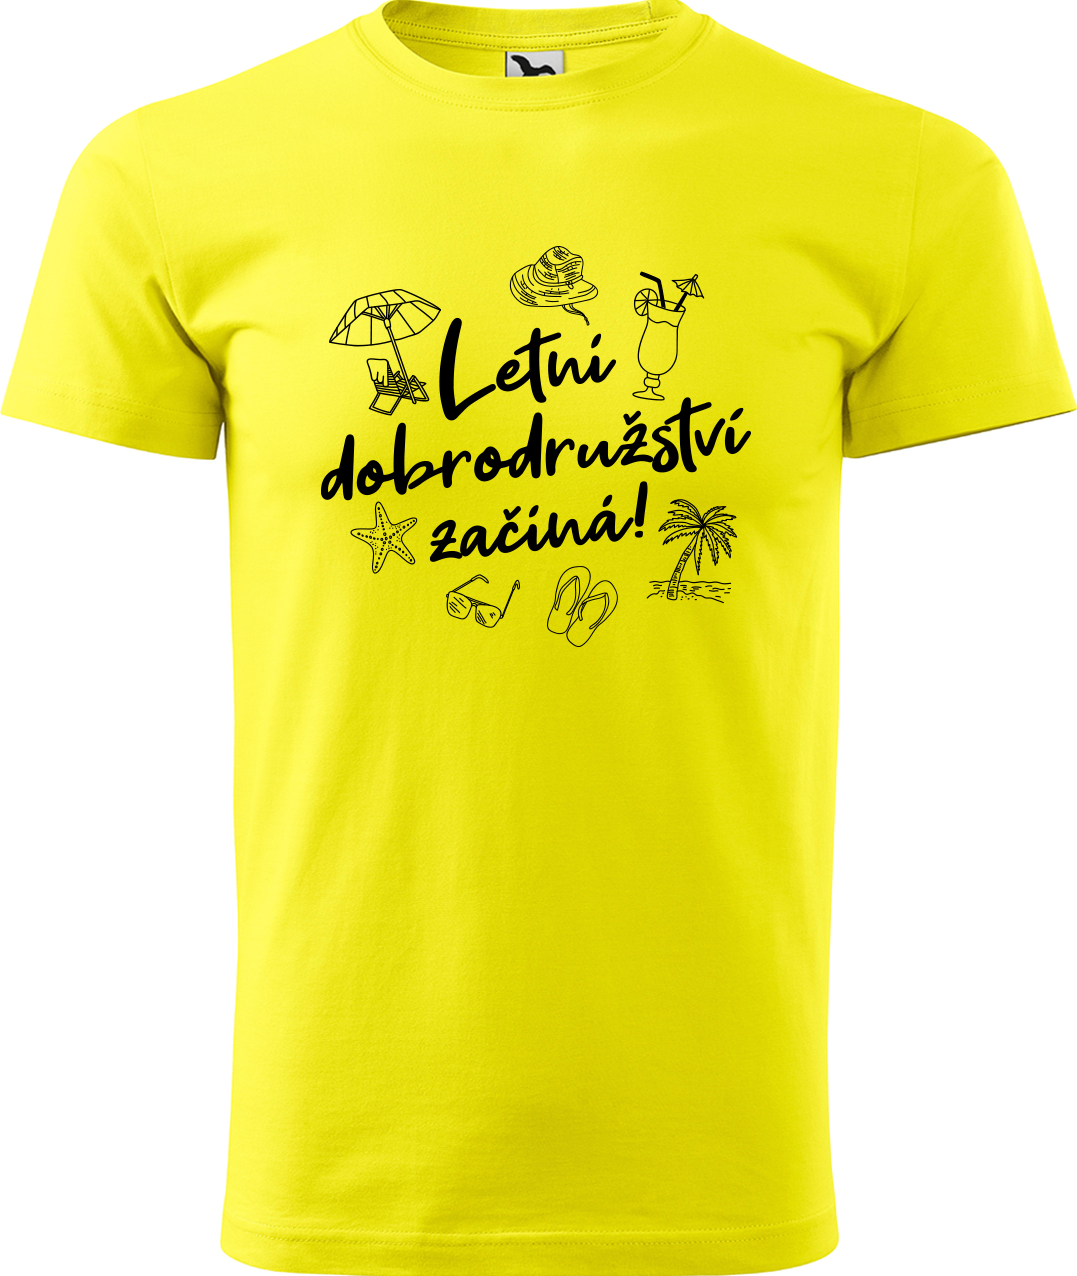 Pánské cestovatelské tričko - Letní dobrodružství začíná! Velikost: 2XL, Barva: Žlutá (04), Střih: pánský